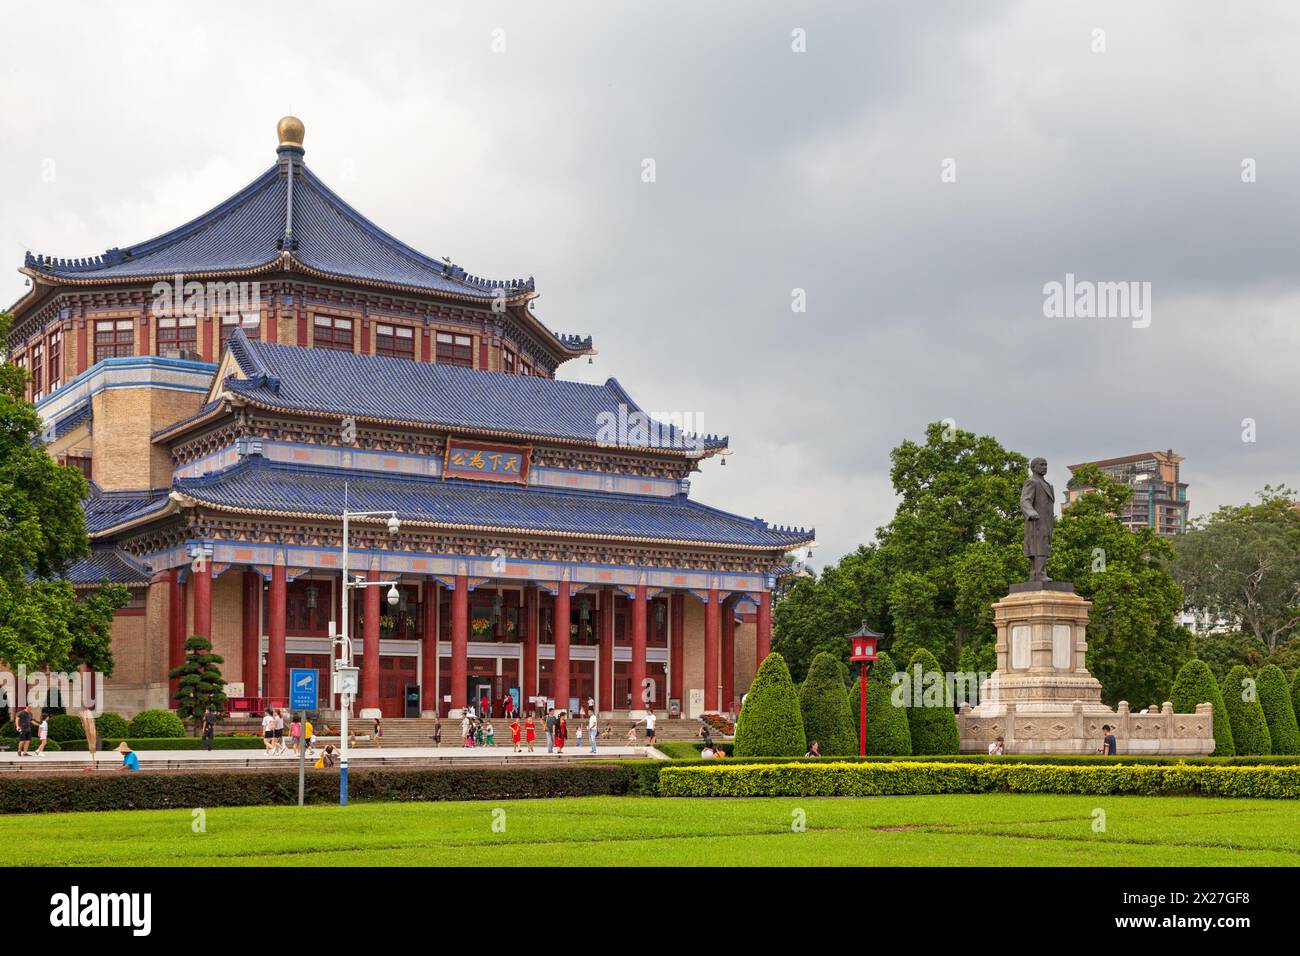 Guangzhou, China - August 16 2018: The Sun Yat-sen or Zhongshan Memorial Hall is an octagon-shaped building in Guangzhou, capital of China's Guangdong Stock Photo